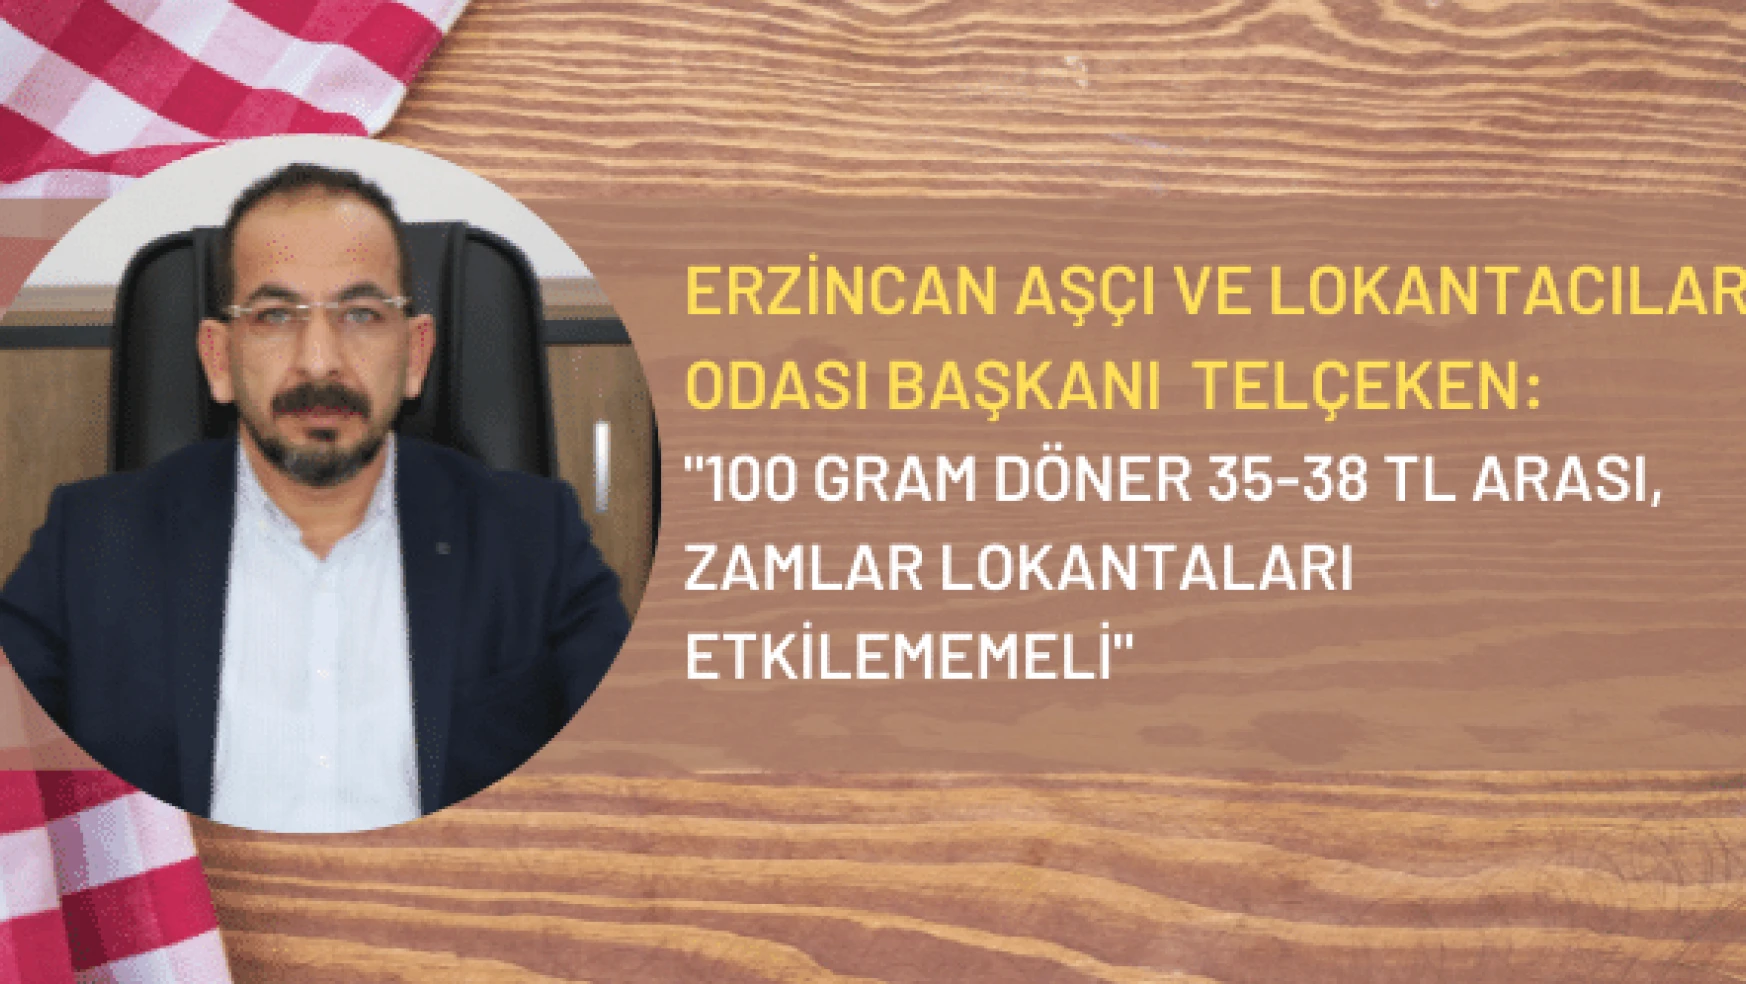 Erzincan'da lokantalar zamlara baş kaldırdı! 100 gram döner 38 TL